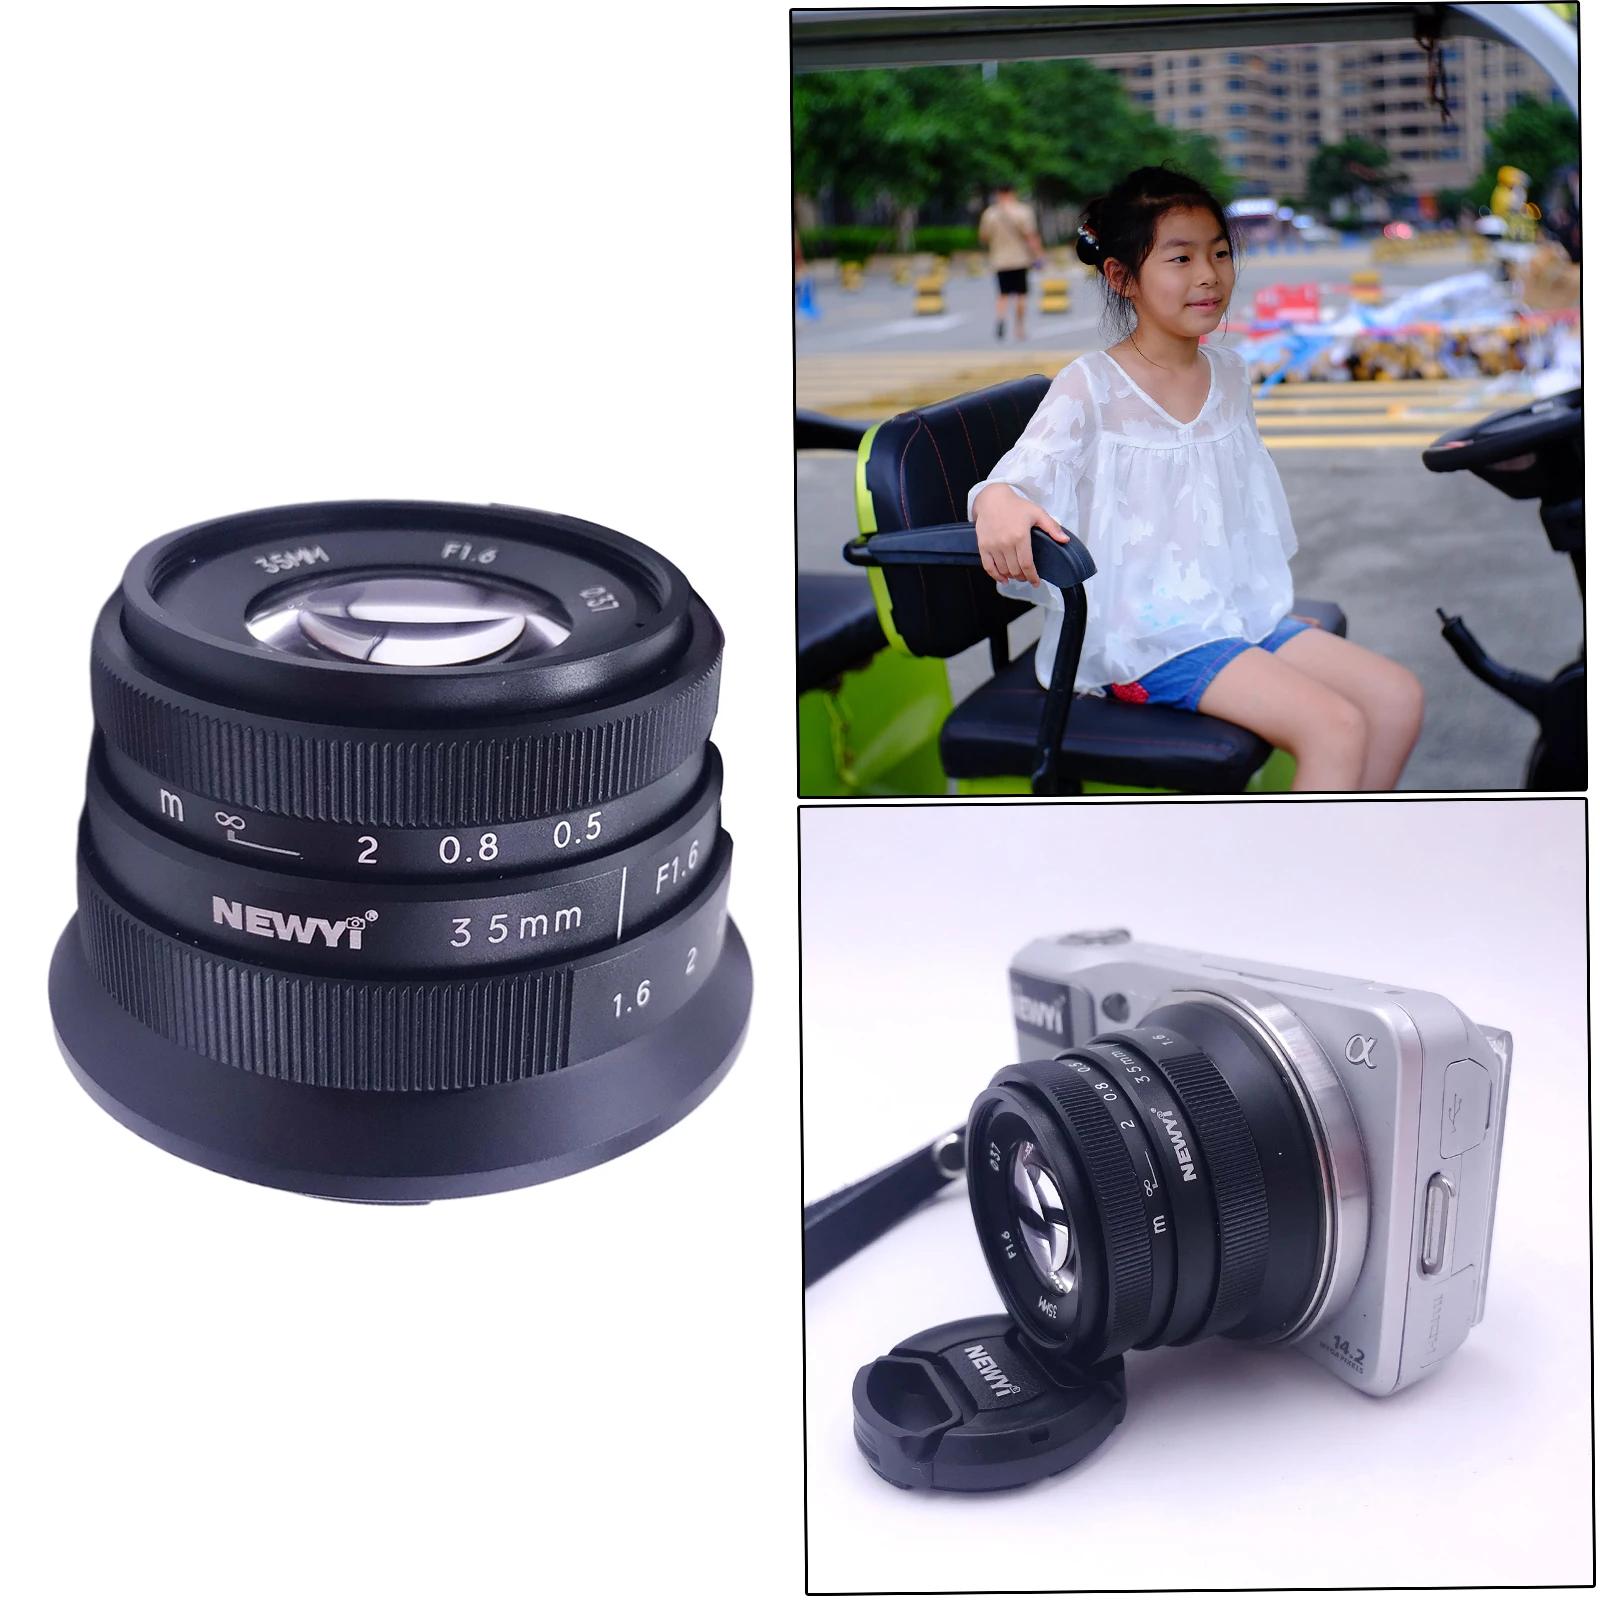 

Mini 35mm F1.6 APSC Lens for Sony E-Mount A6300 A5100 A5000 NEX-3 NEX-3R NEX-5 NEX-5T NEX-5C A7 A7II A7R A7SII